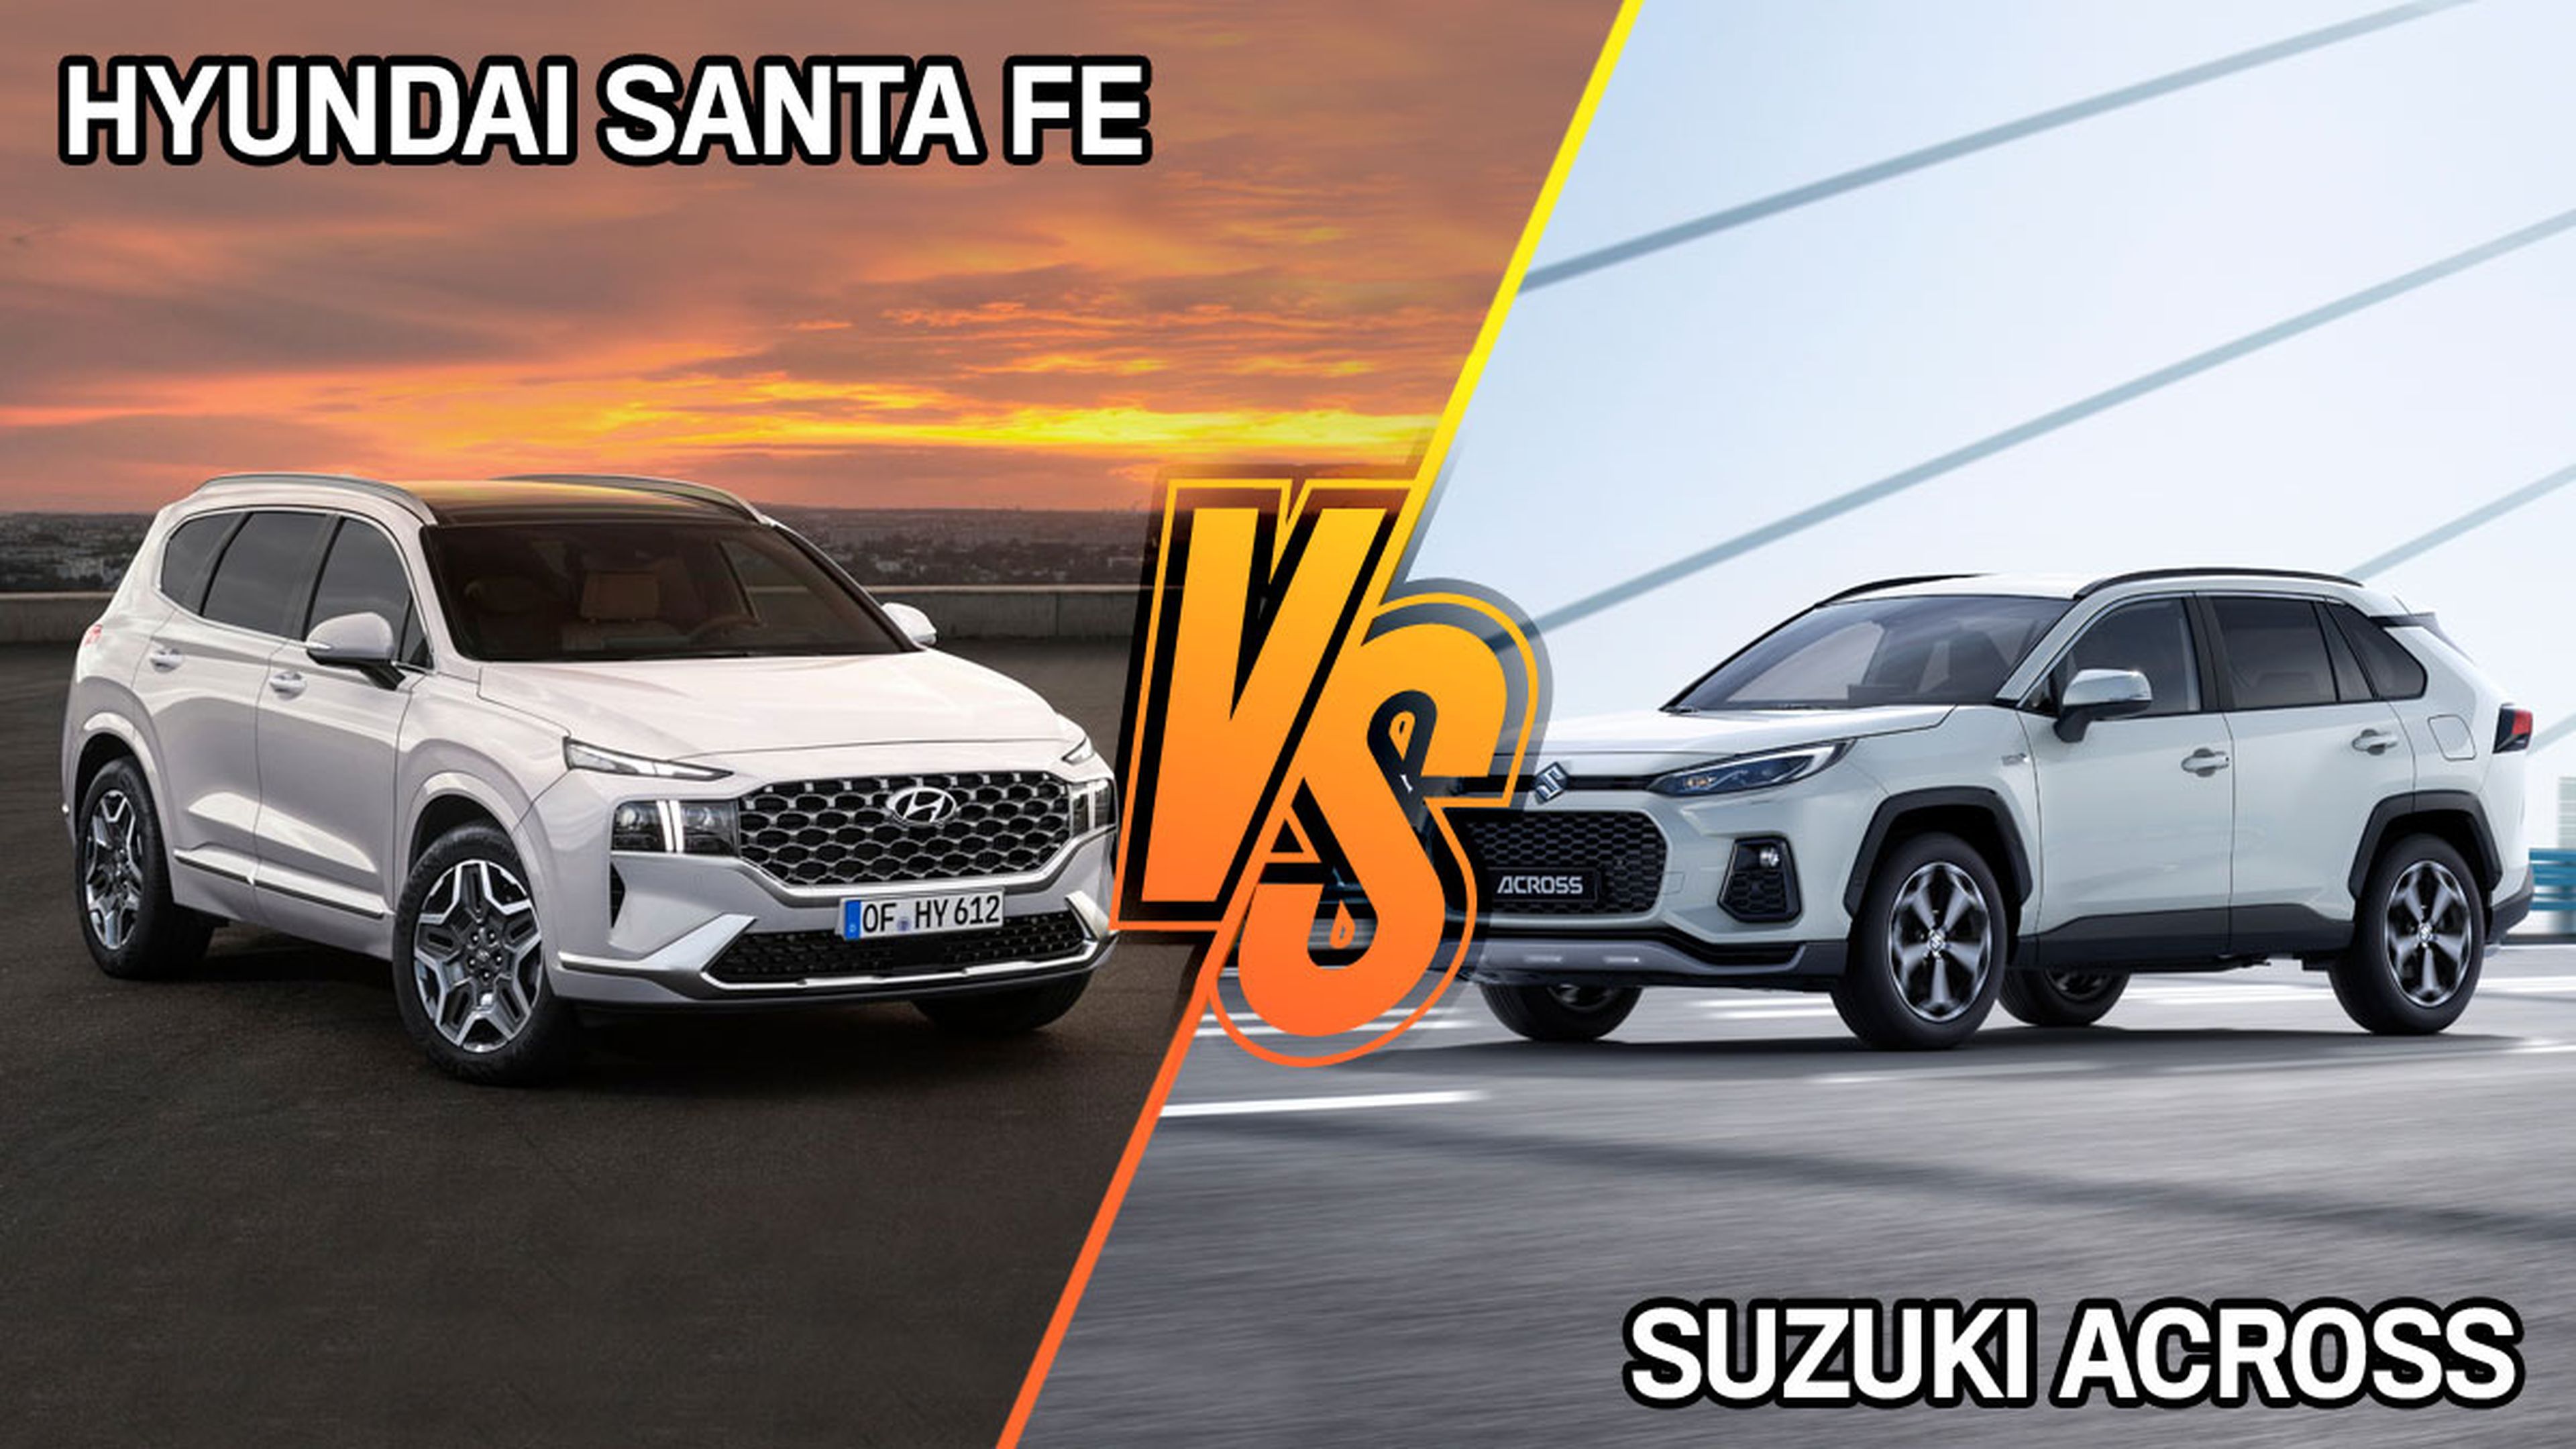 Suzuki Across vs Hyundai Santa Fe 2021